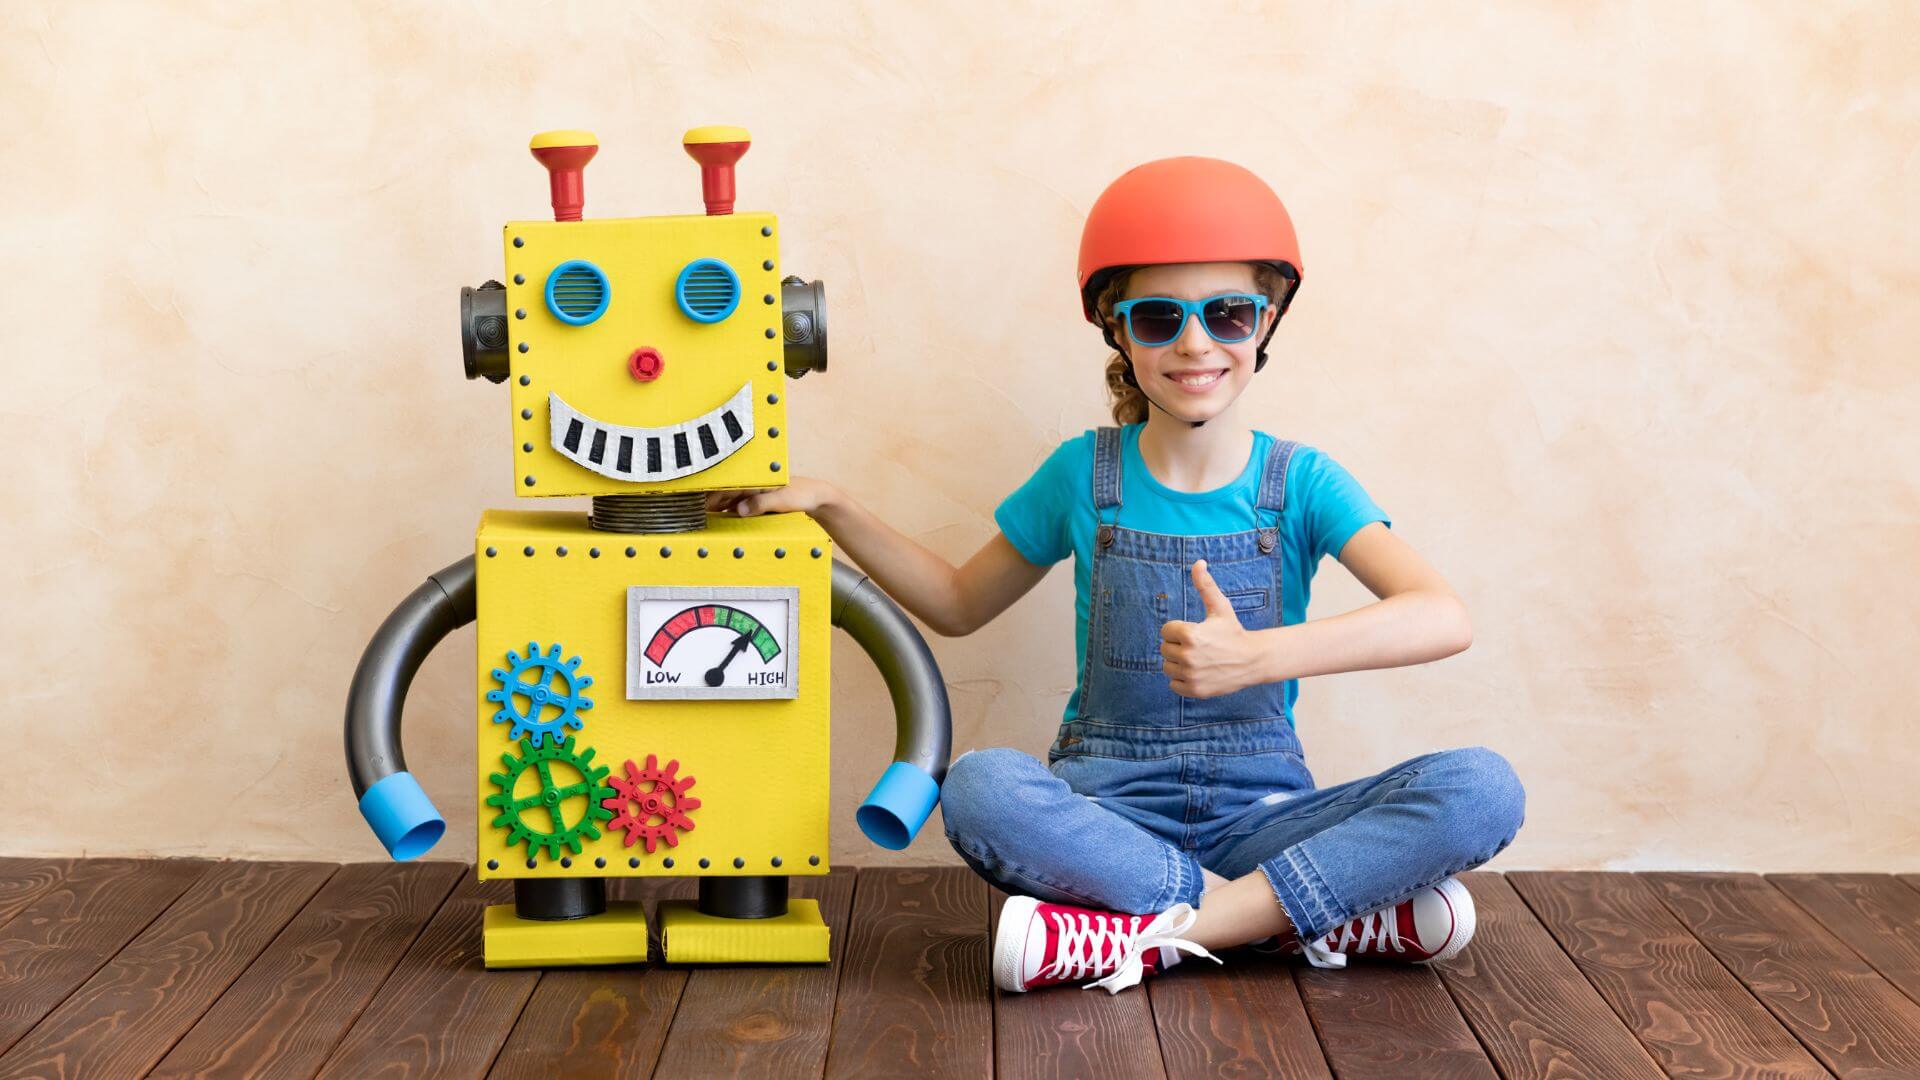 Le robot jouet, un compagnon de jeu futuriste – promo jouets